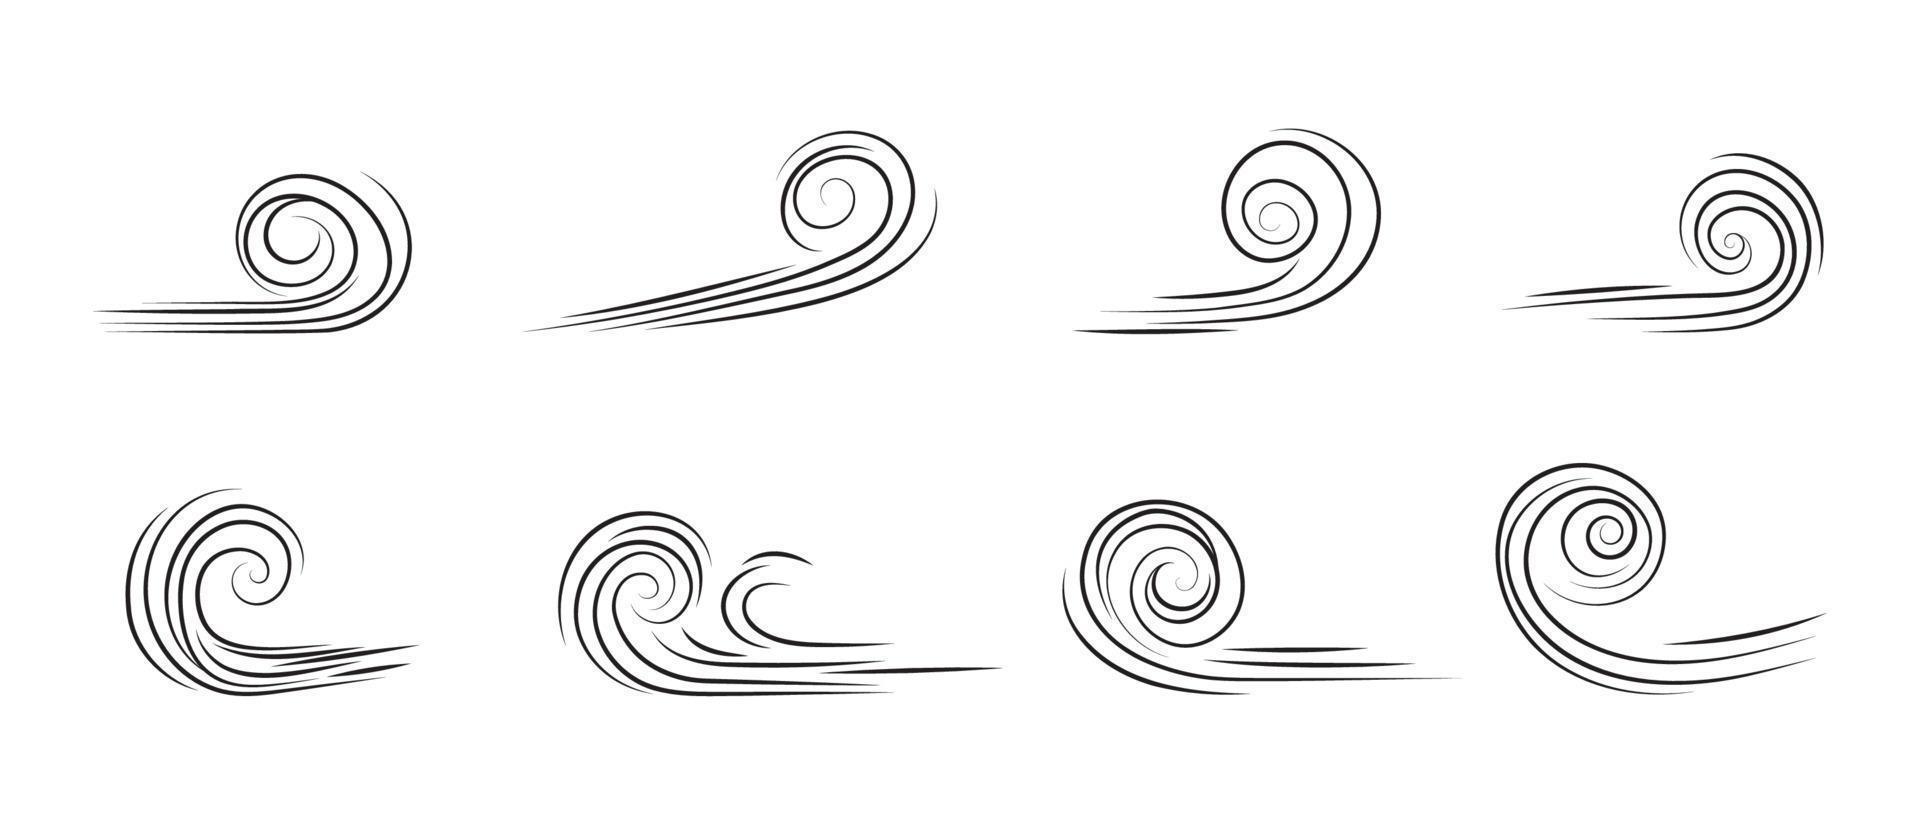 wehendes Windgekritzel. umreißen Sie das Windbewegungssymbol, das auf weißem Hintergrund lokalisiert wird. hand gezeichnete luftwellenikone. Klimaskizzenelement. Vektor dekorative Strichlinien in Form einer Kurve.